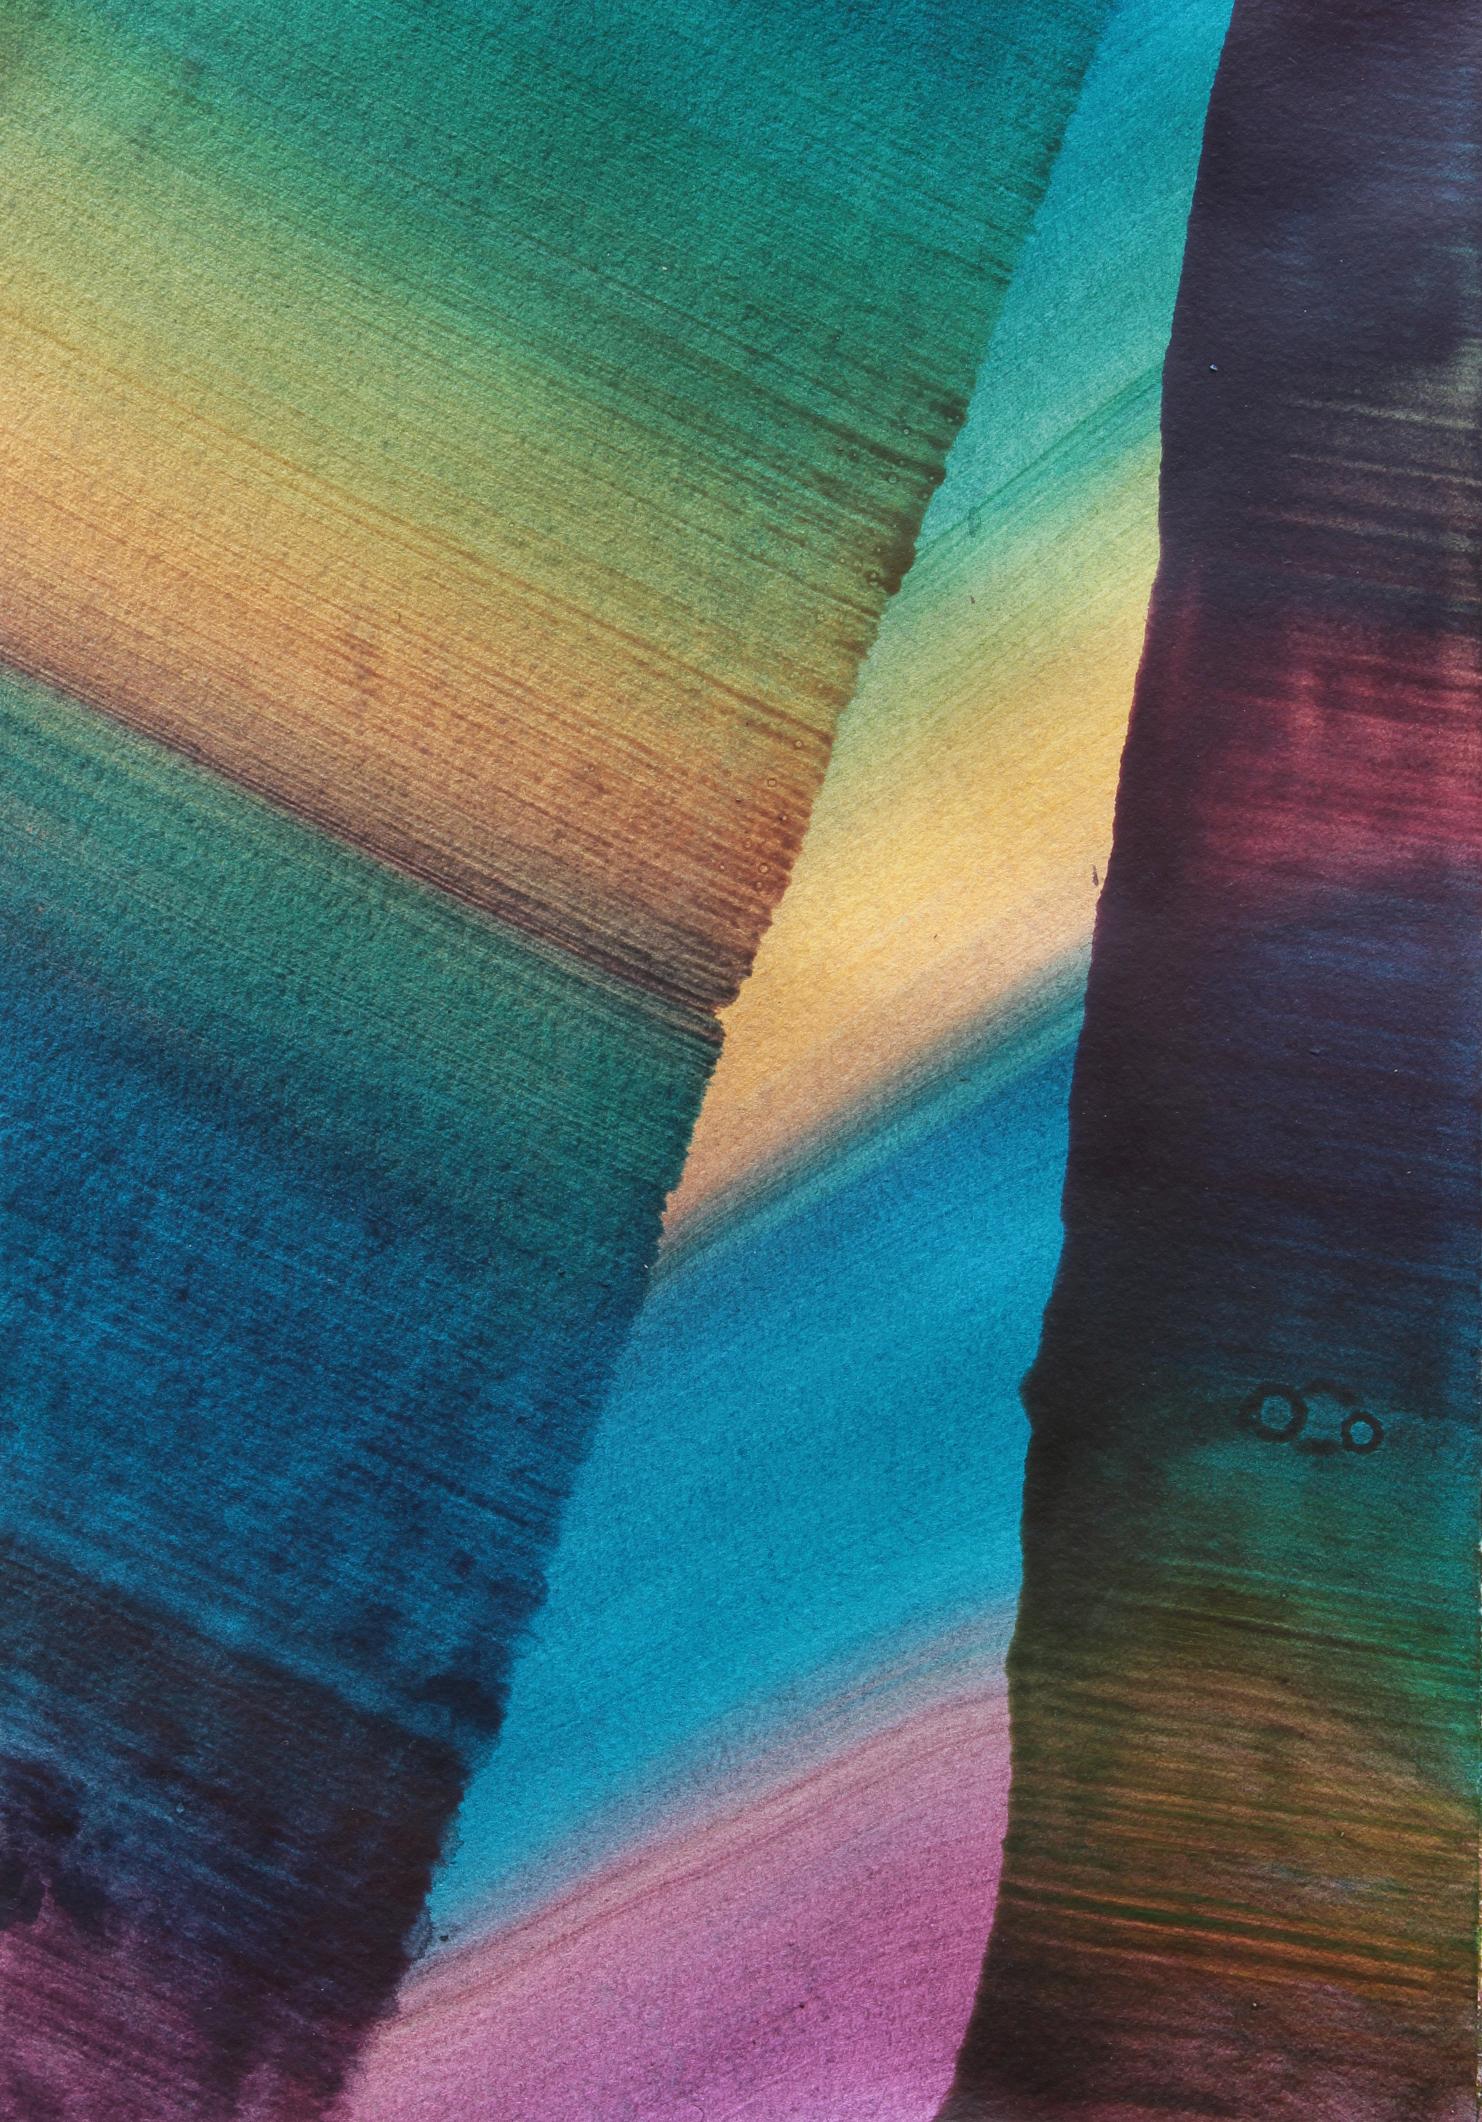 Sans titre 19 -  Série 2019, peinture abstraite contemporaine, légèreté des textiles